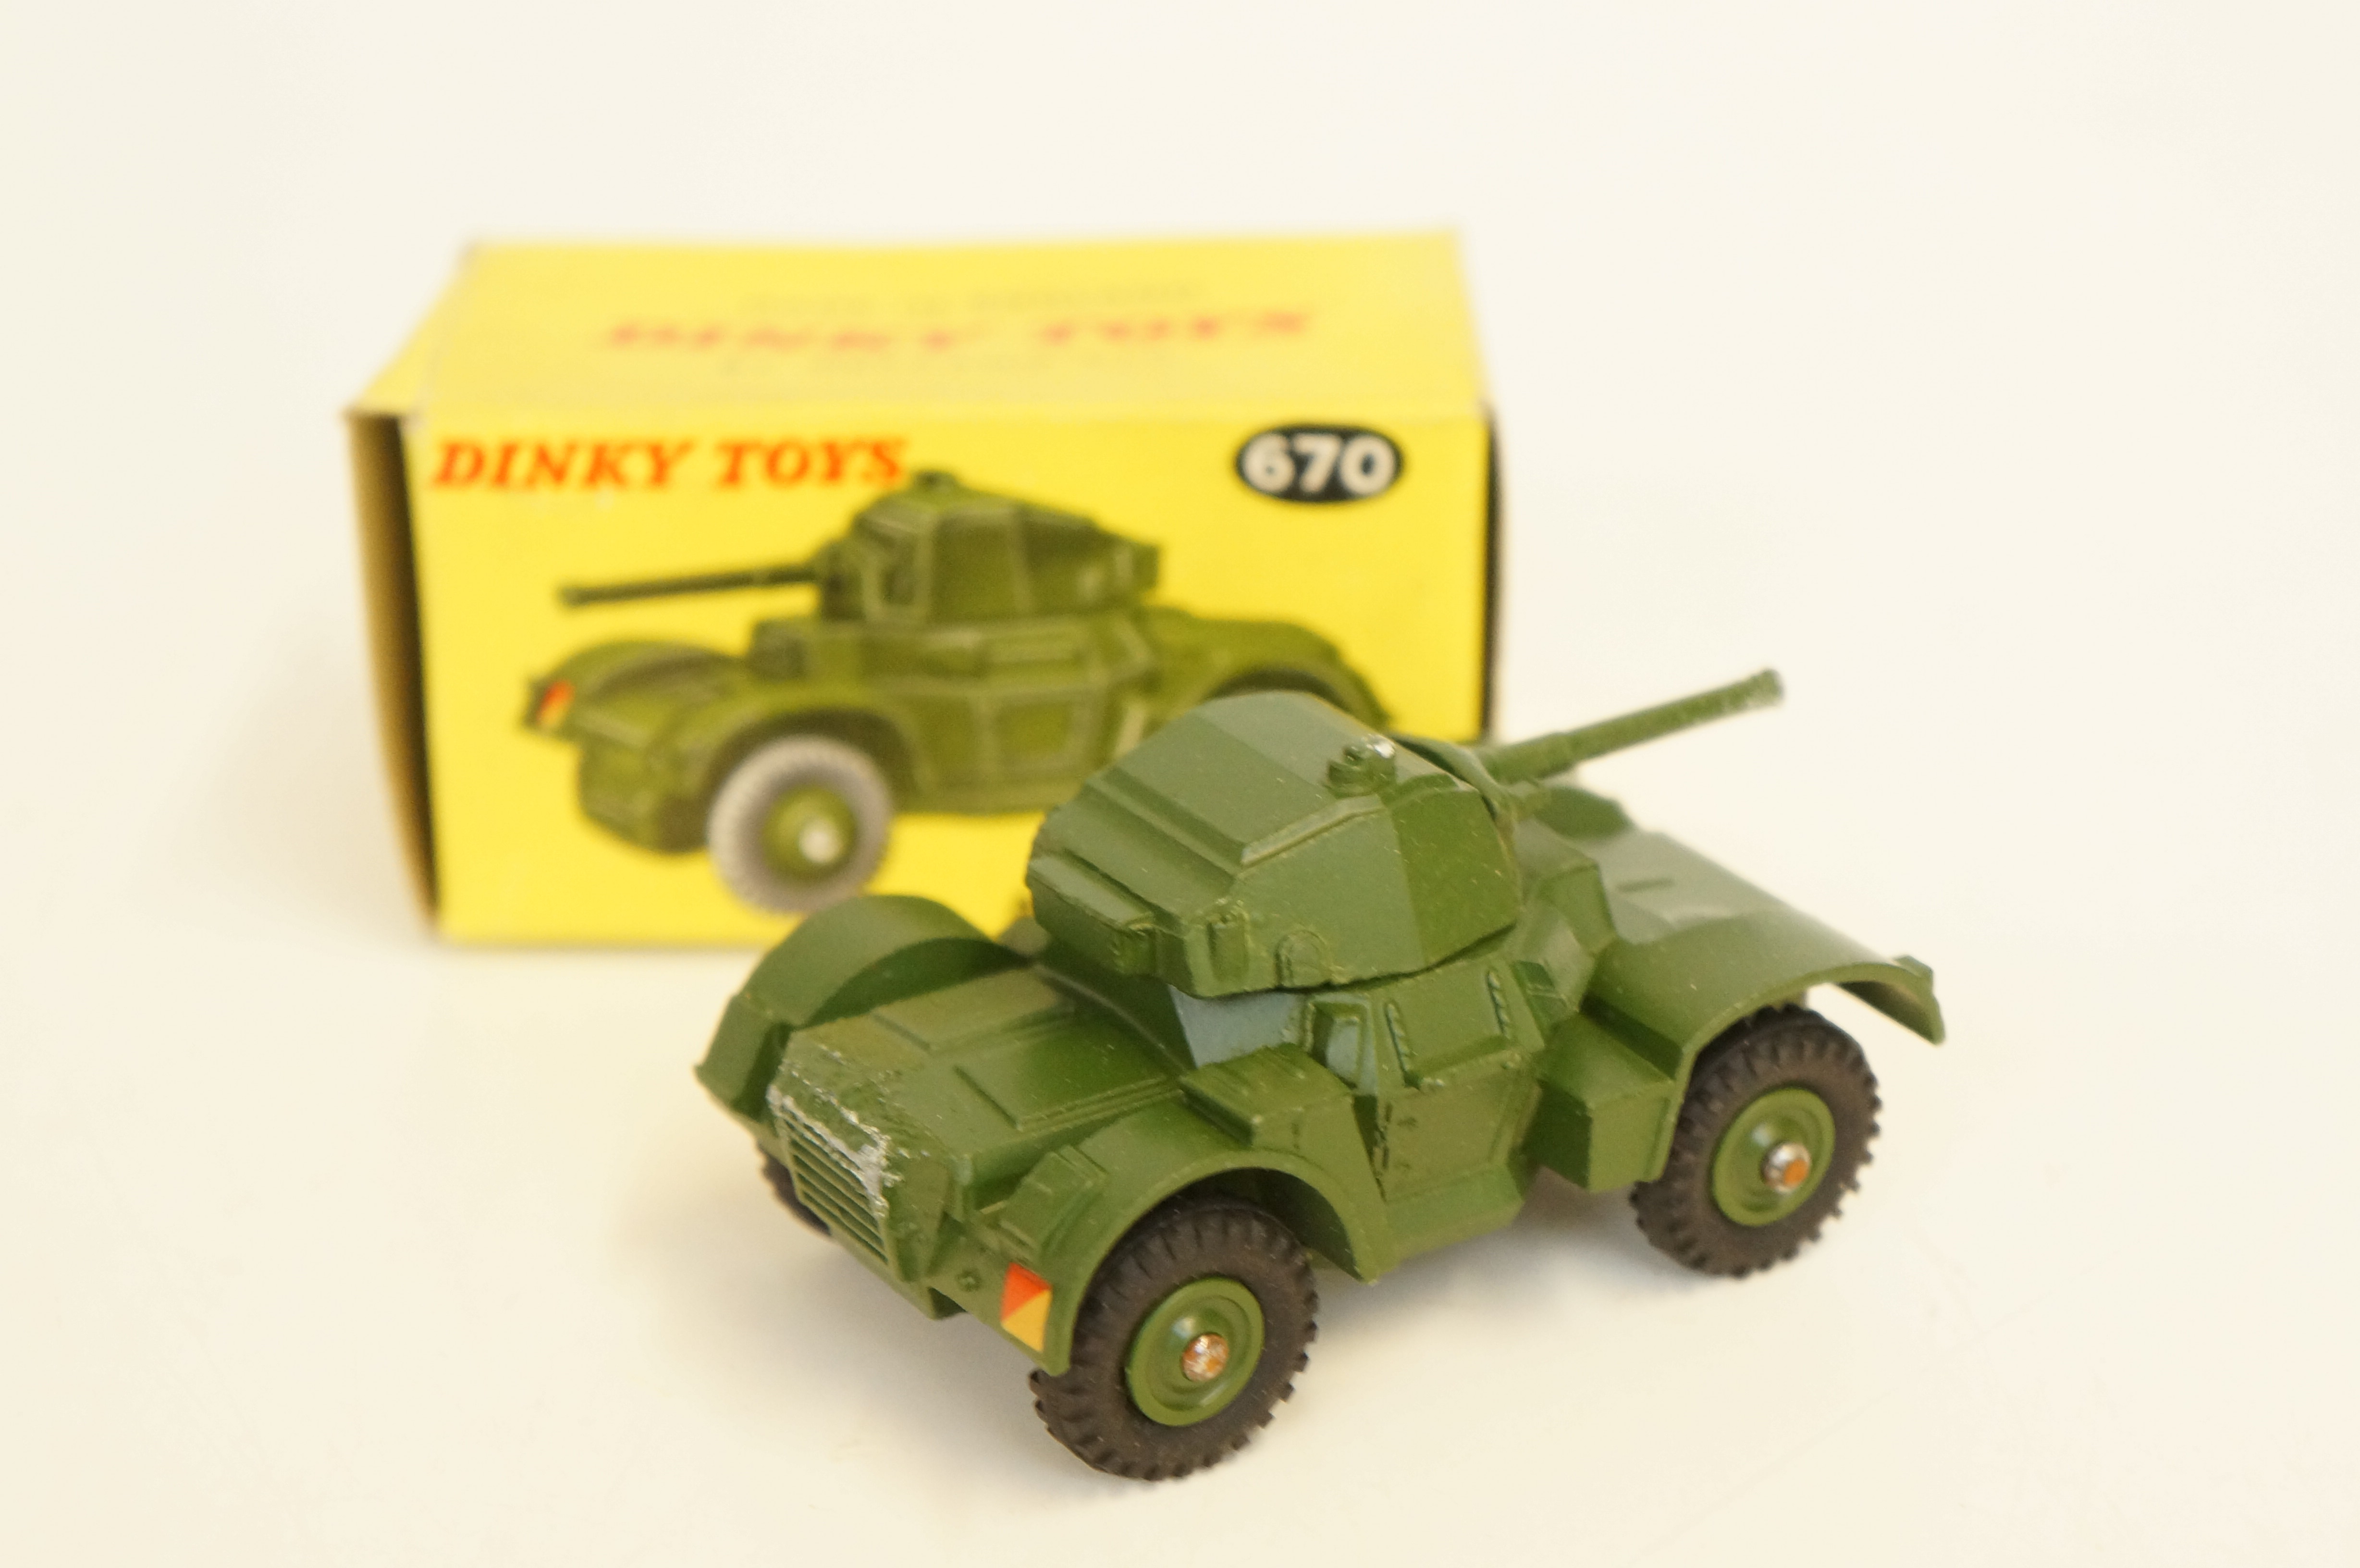 Dinky Toys 670 military armoured car